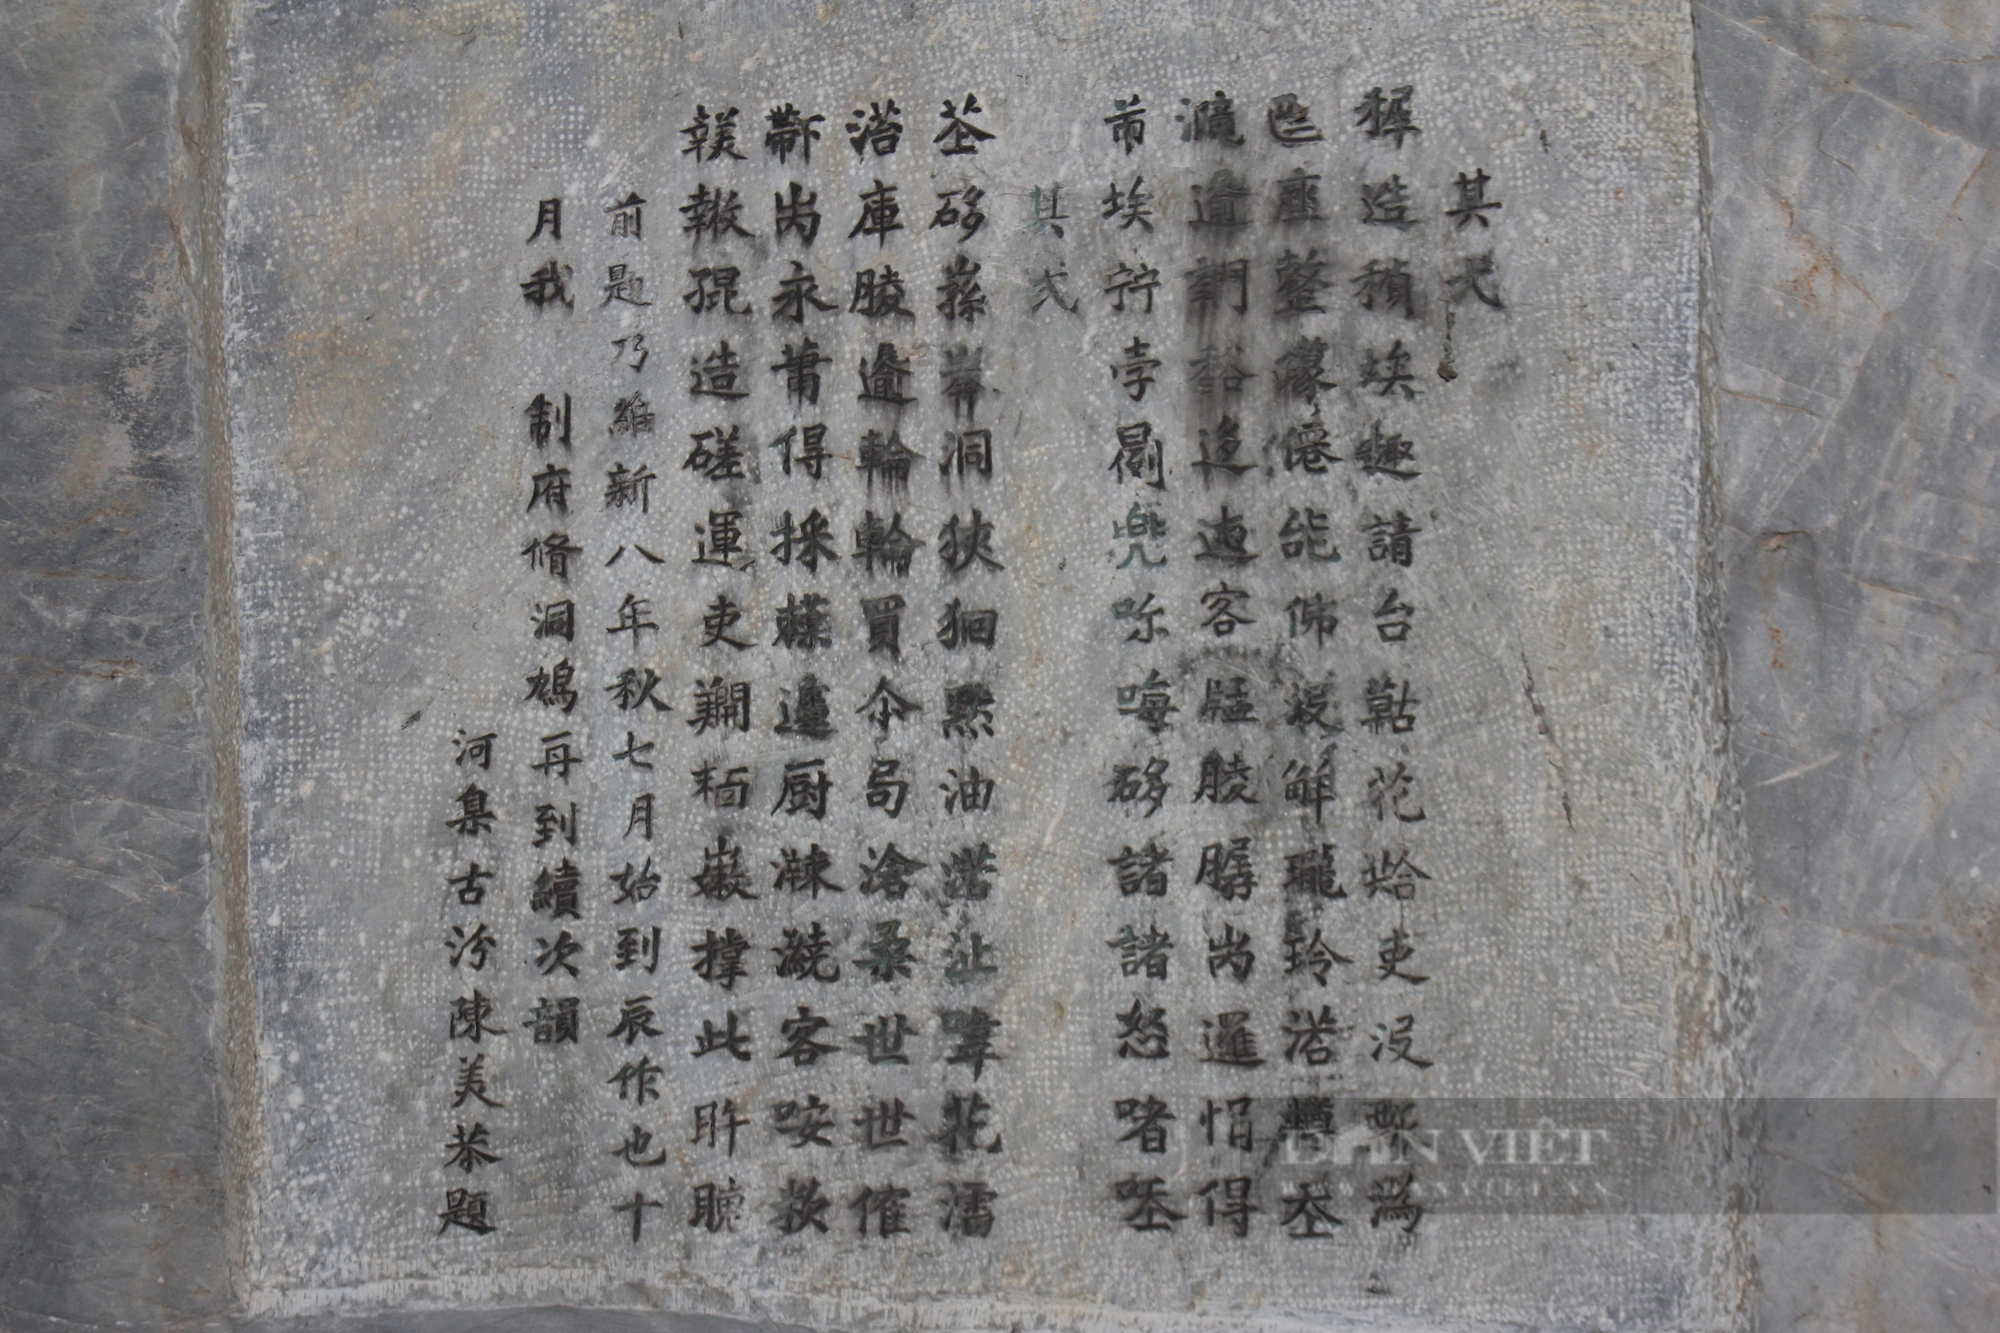 Kỳ vĩ ngôi chùa cổ ở Hà Nội với nhiều tượng Phật bằng đá, nơi Bác Hồ đọc Lời kêu gọi toàn quốc kháng chiến - Ảnh 5.